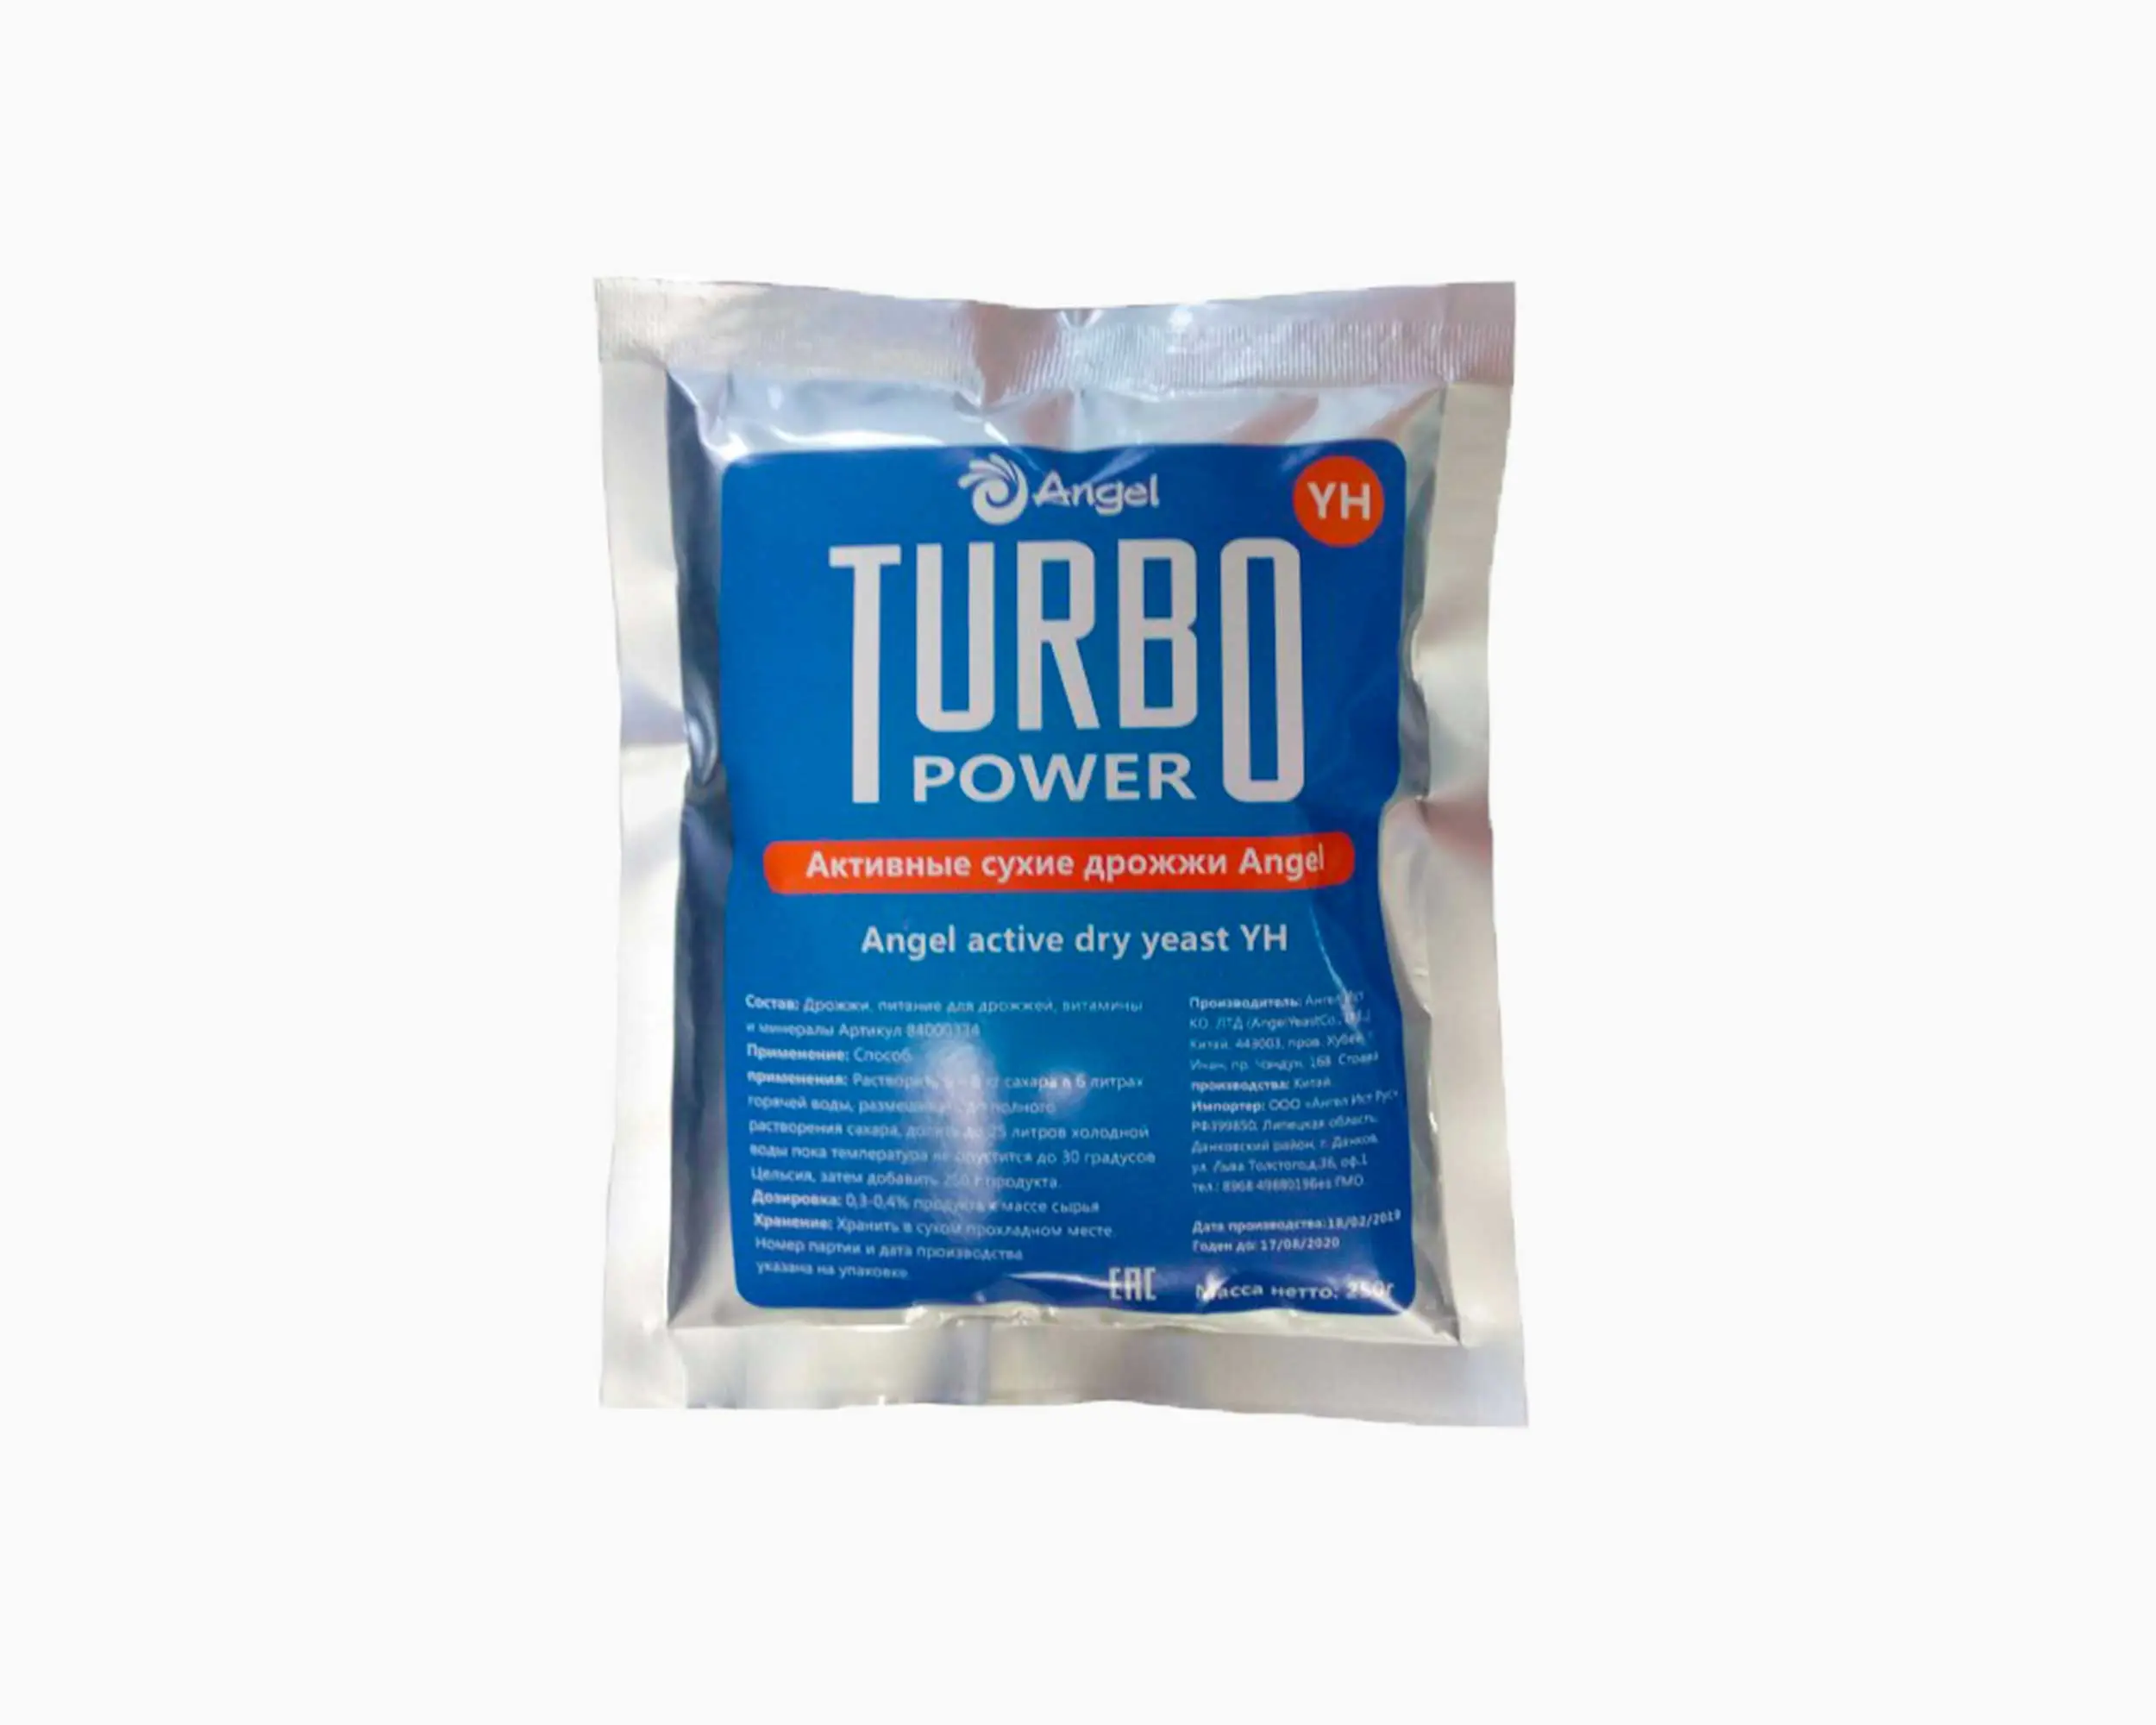 Спиртовые Турбо (Turbo Power)